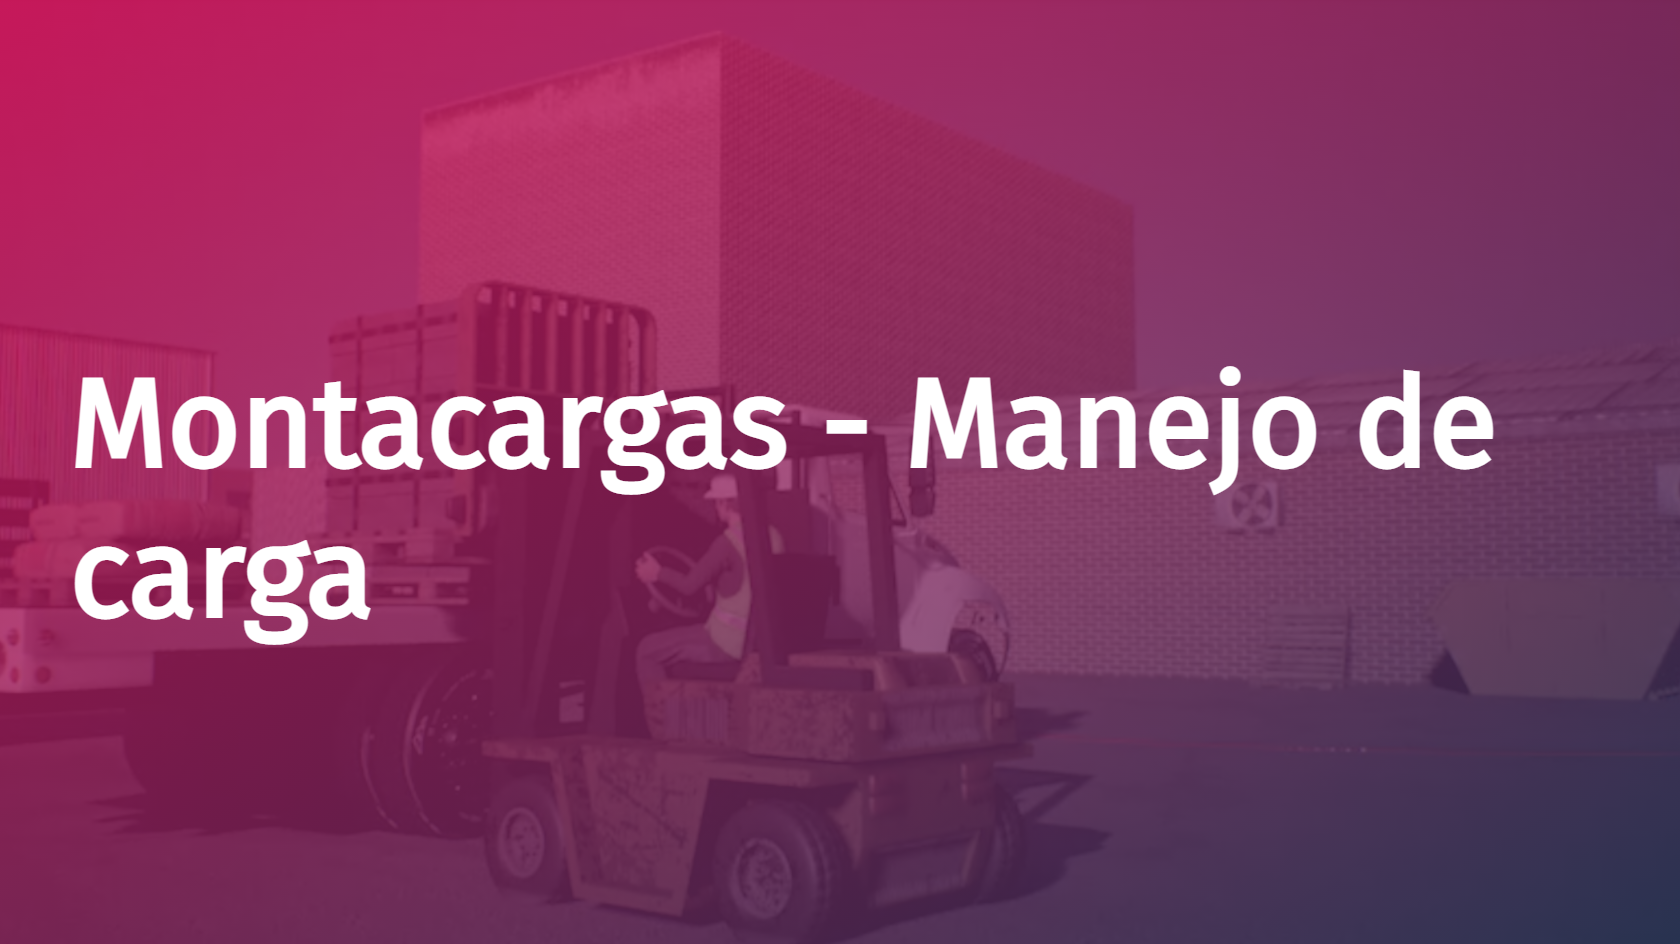 Spanish - Forklift - Load Handling